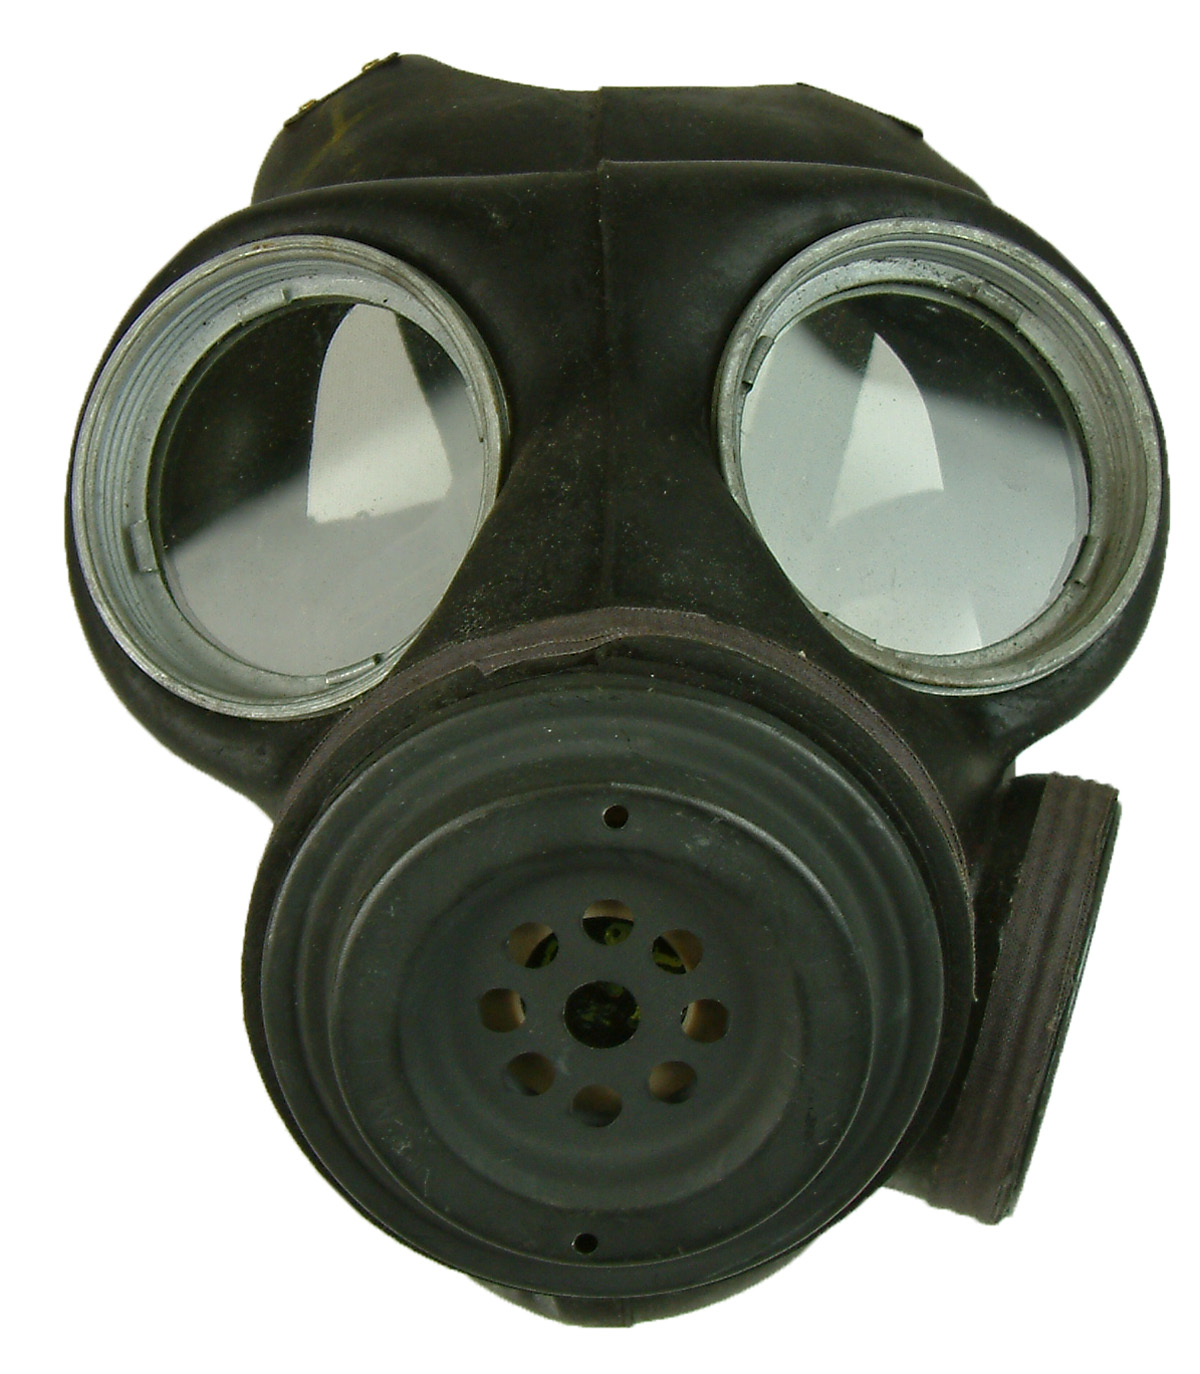 Ww2 Gas Mask Label